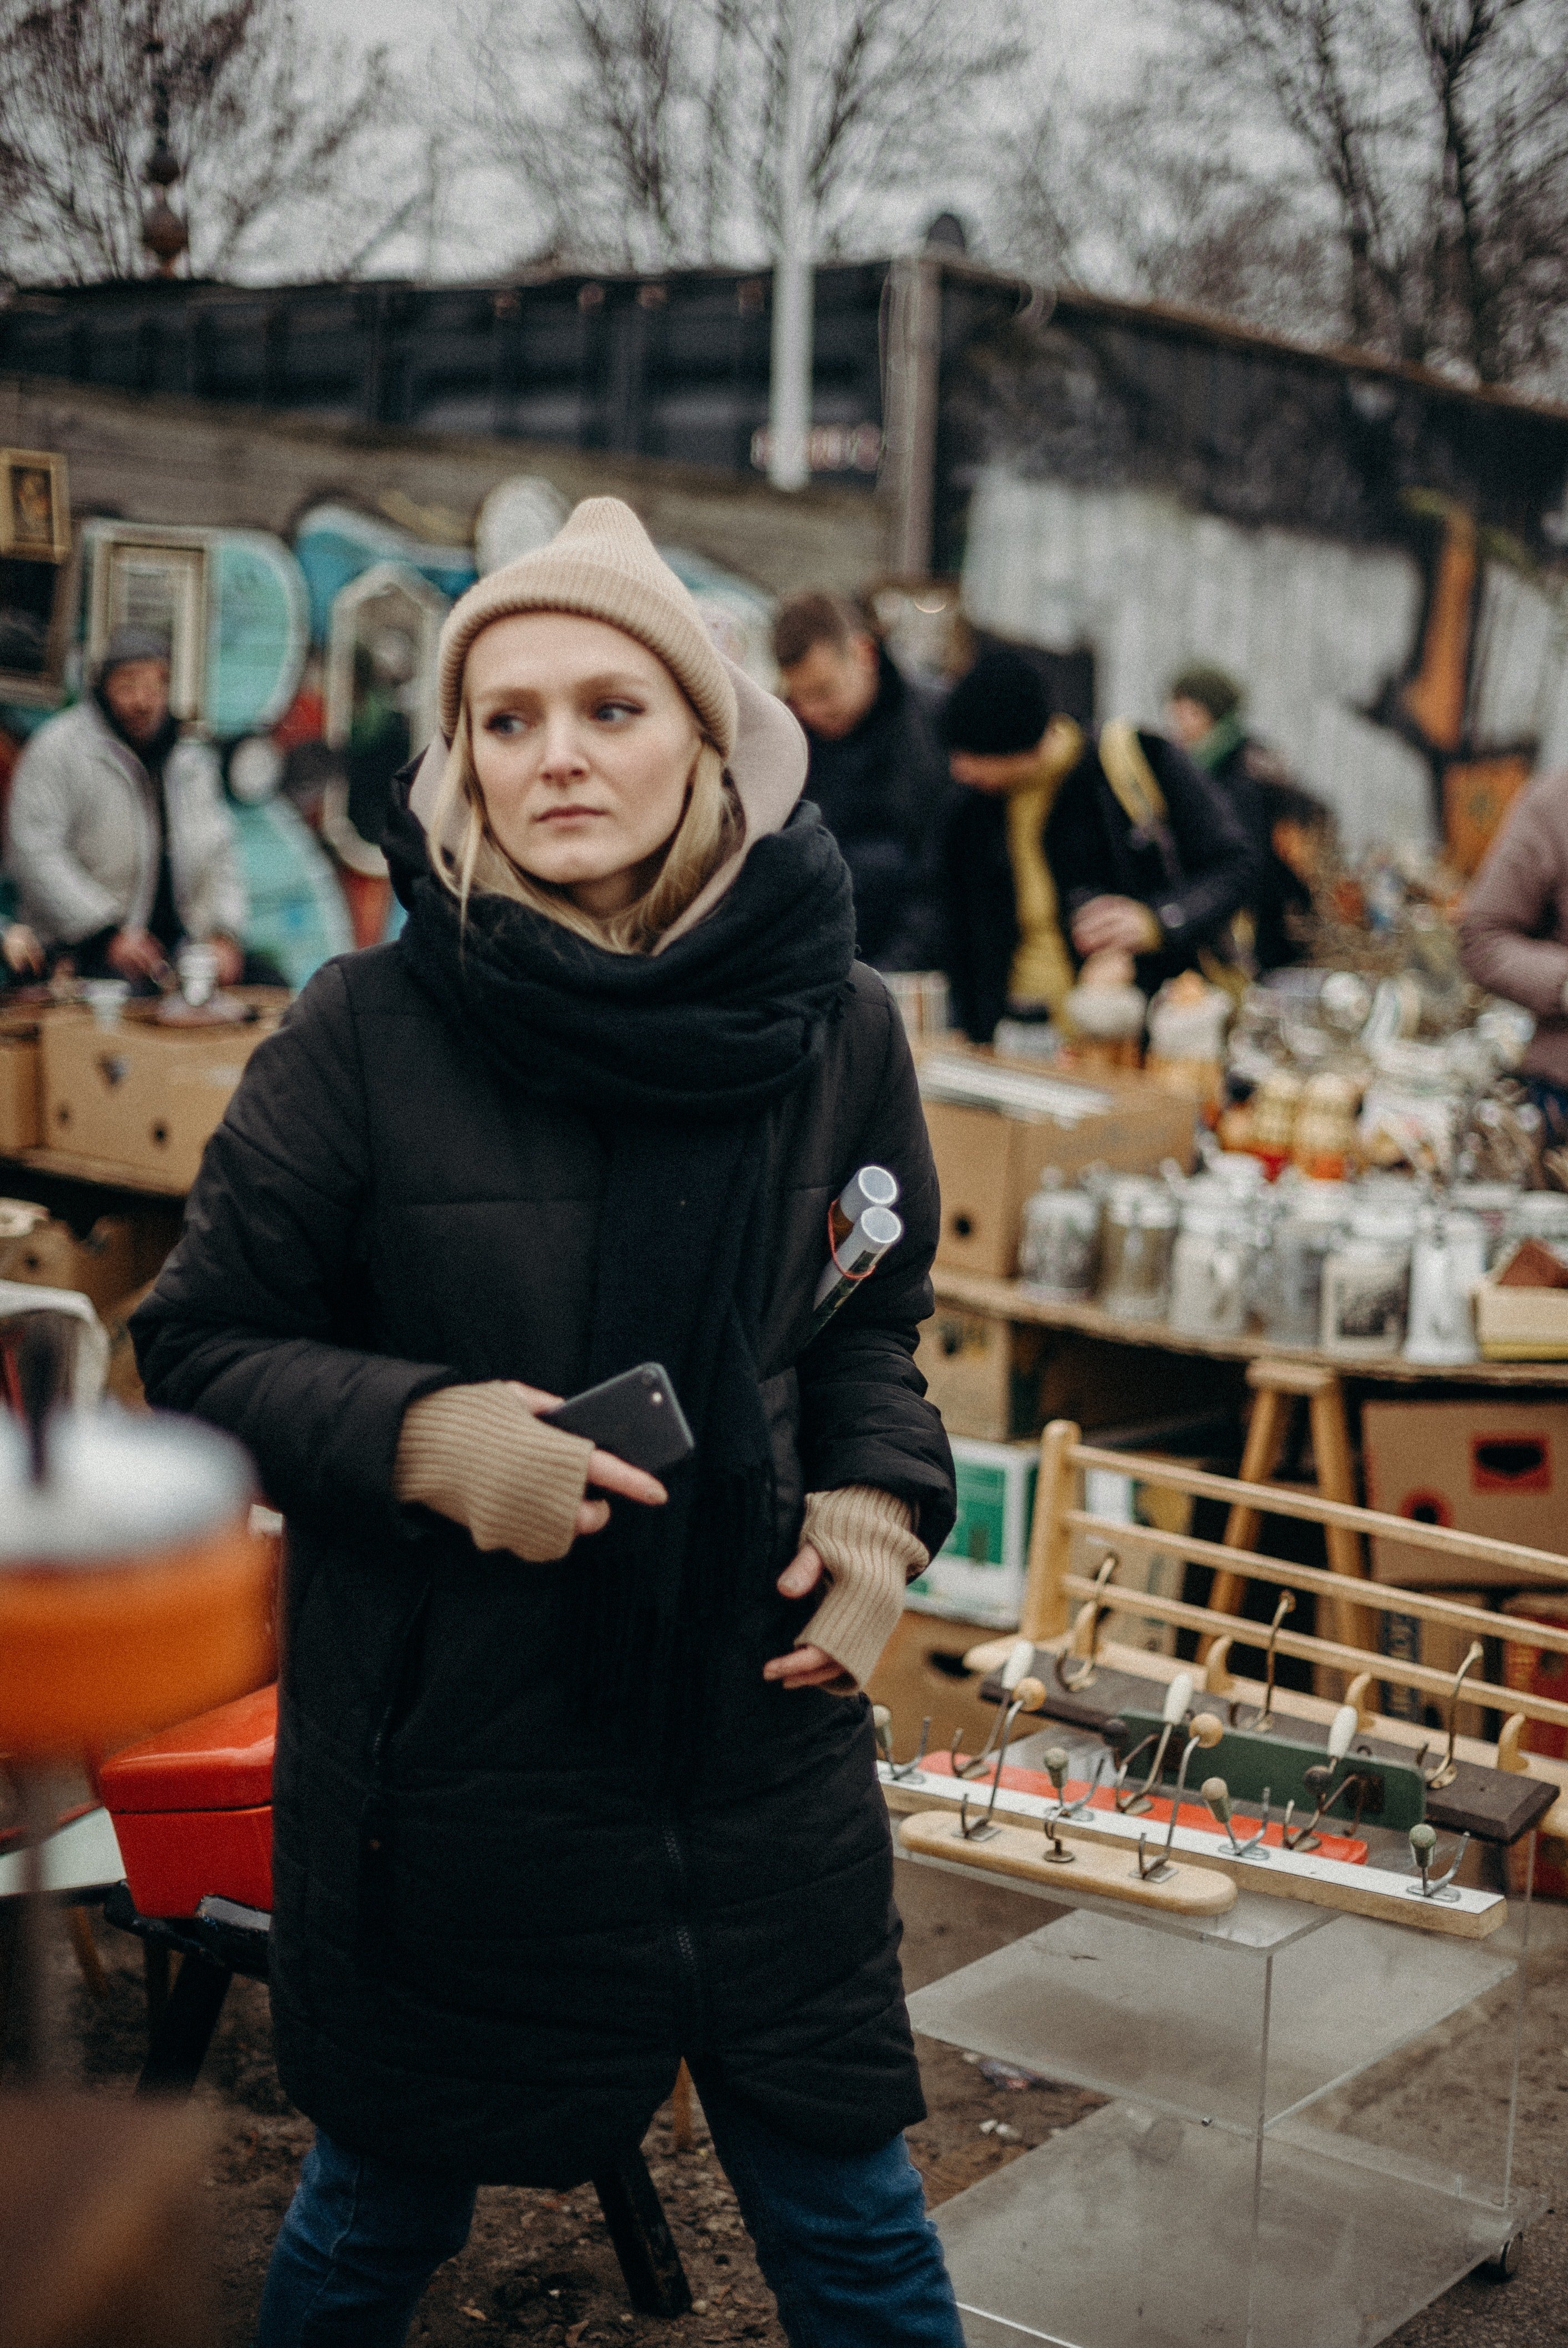 Mujer en mercado de pulgas. | Foto: Pexels